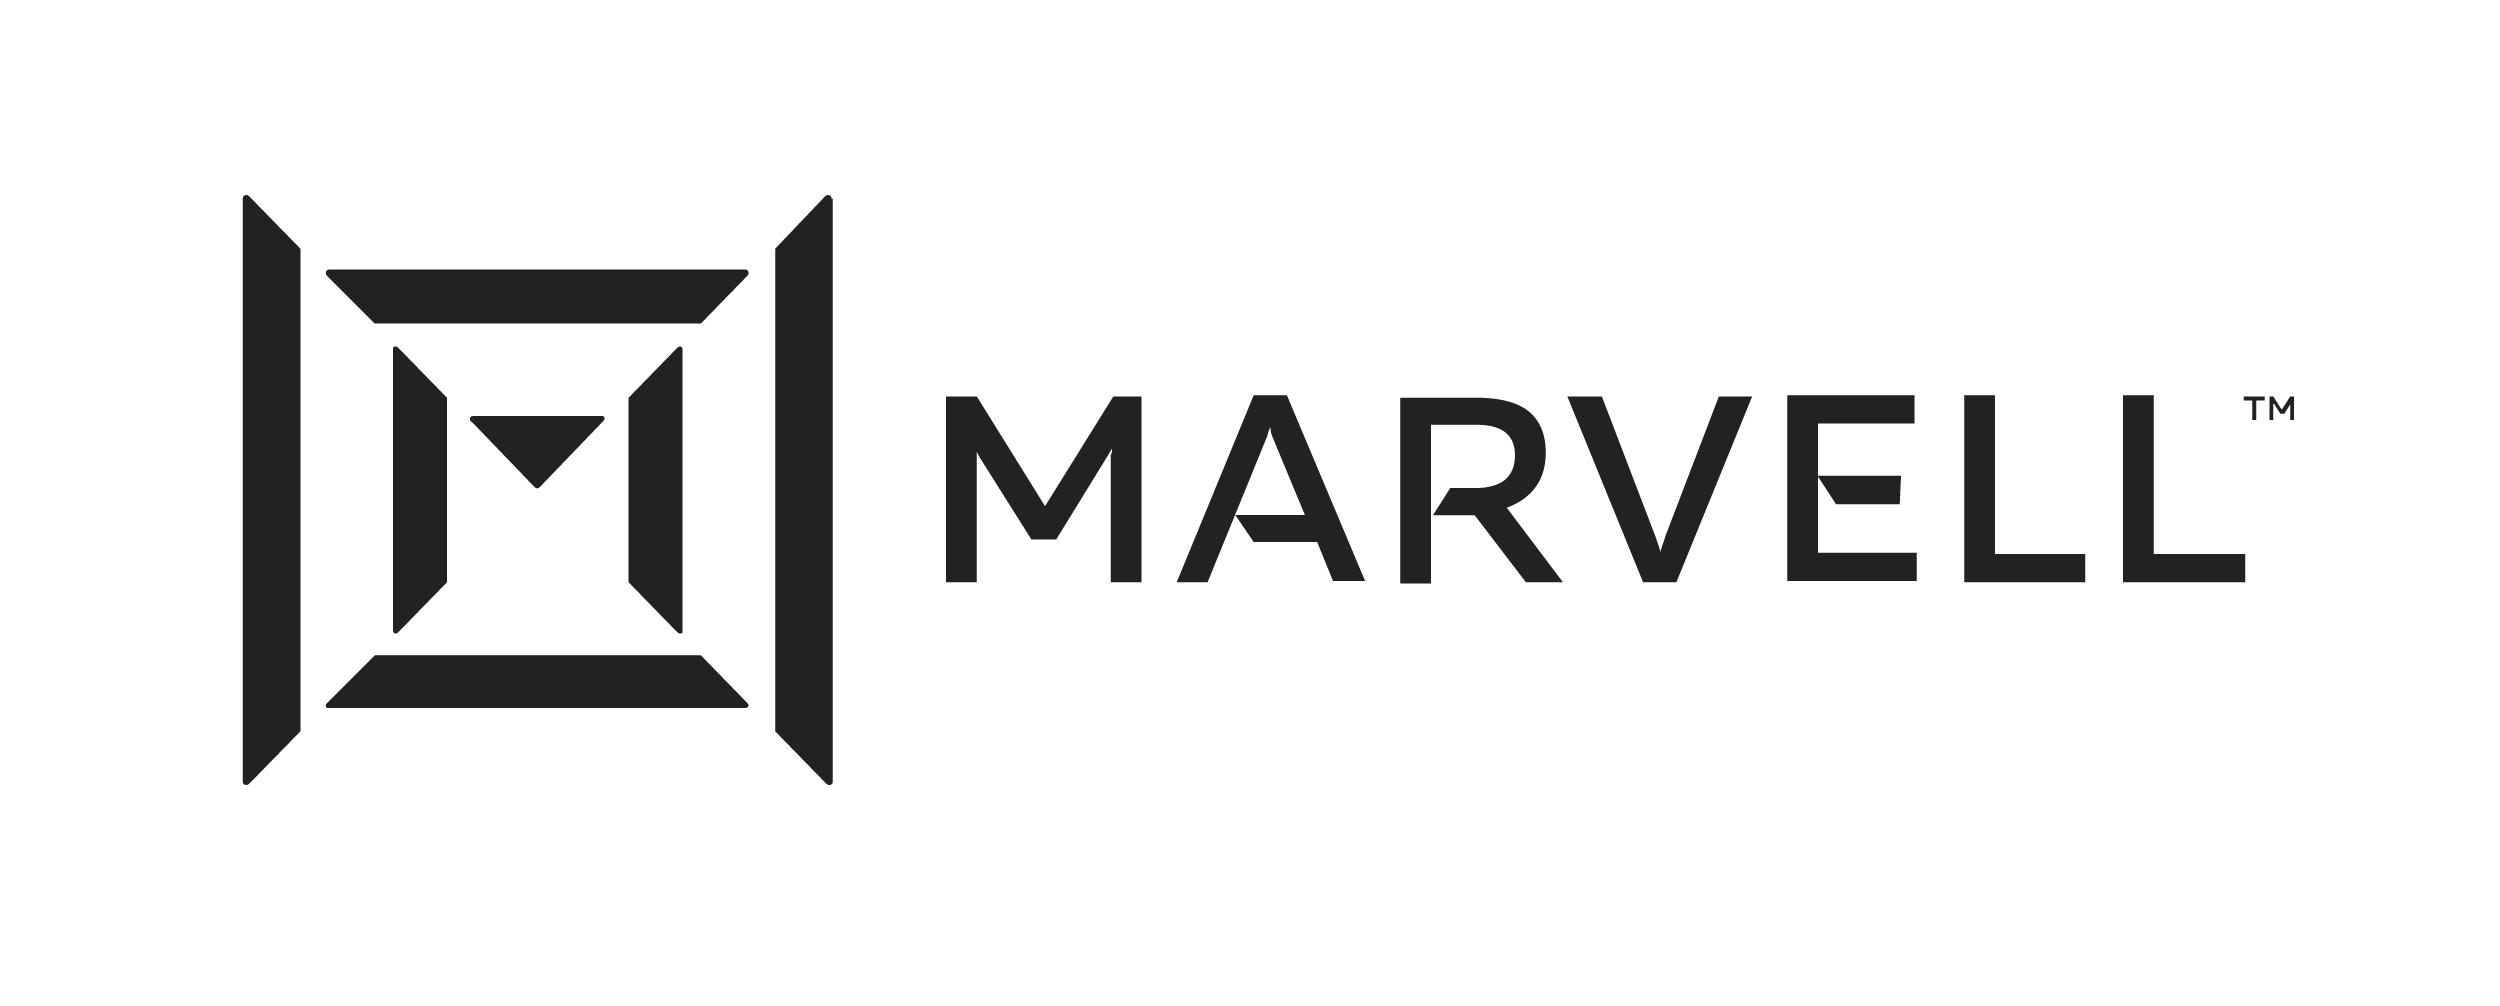 Marvell-logo_1